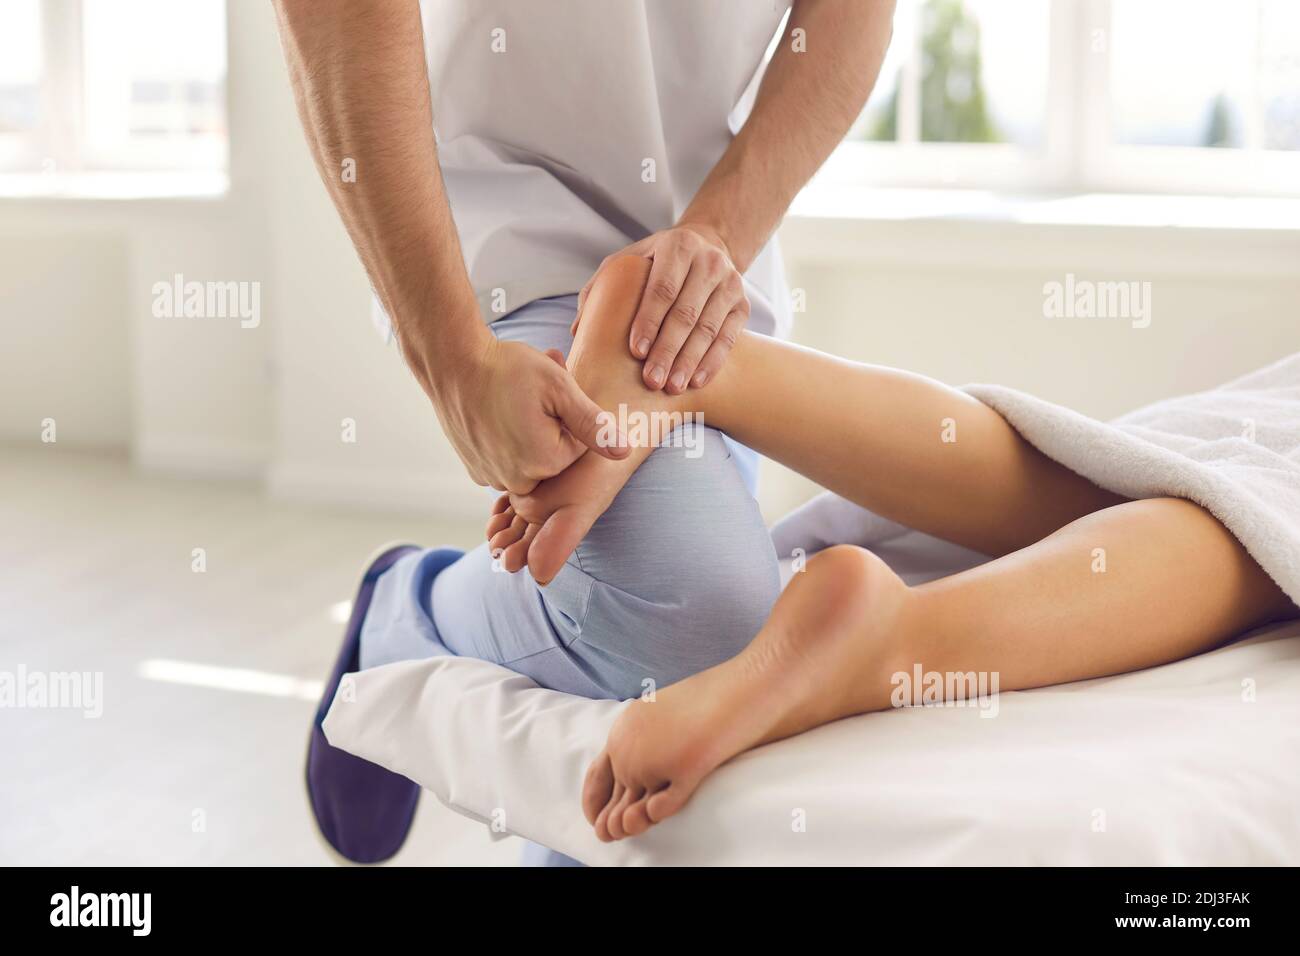 Immagine ritagliata della mano di un medico ortopedico maschile che esamina e massage il piede di un paziente. Foto Stock